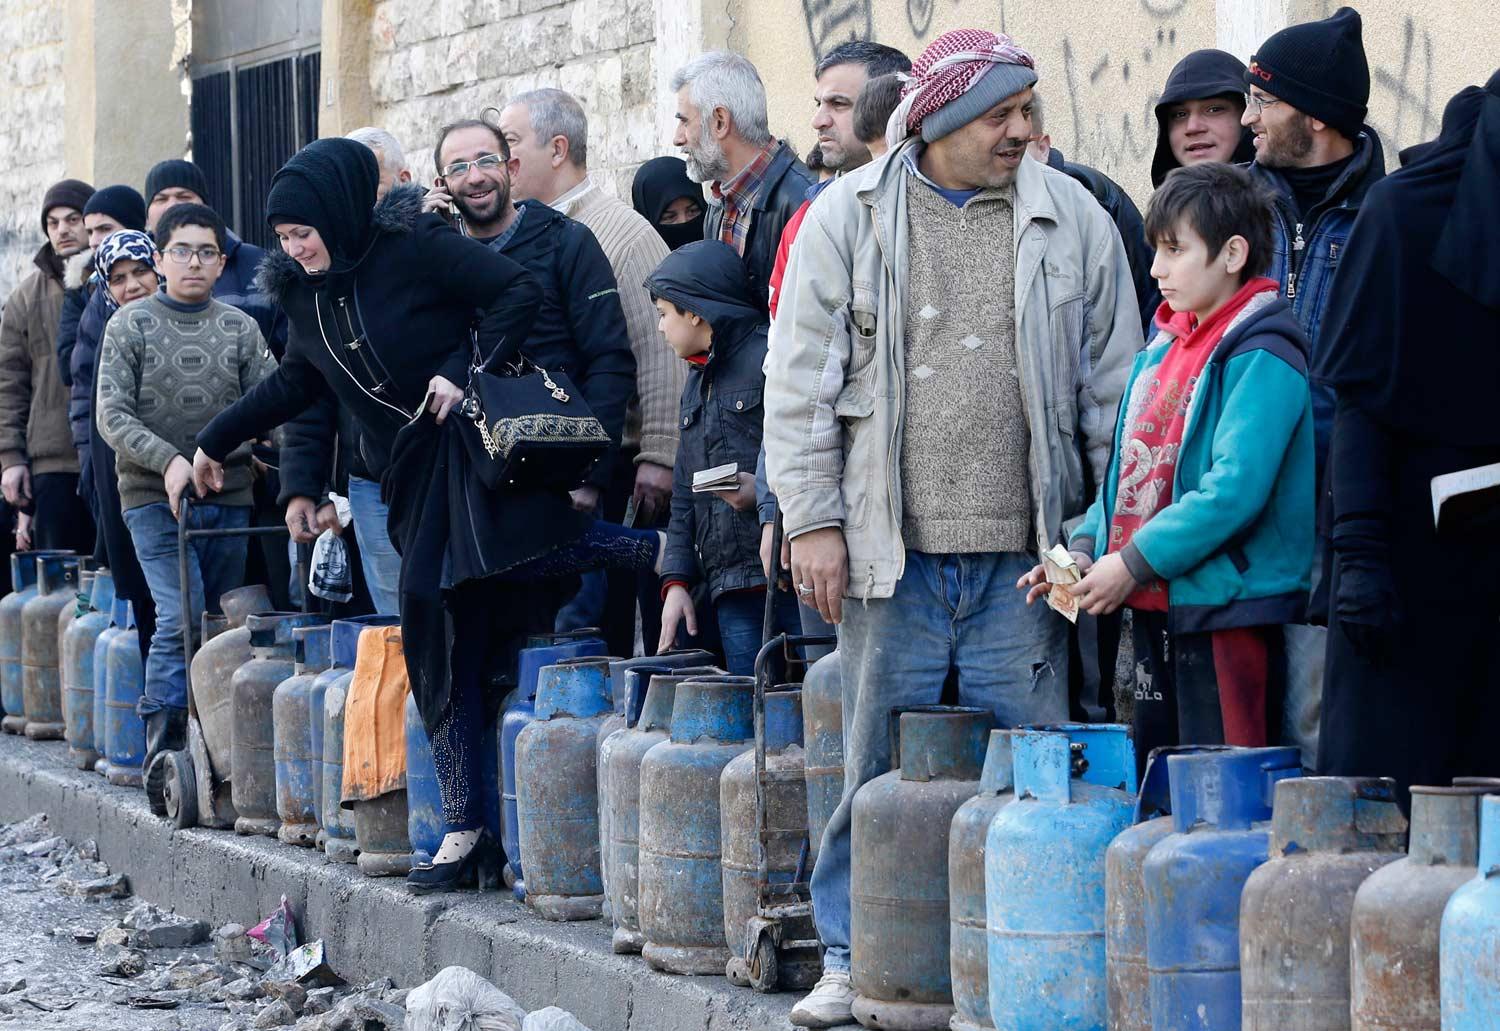 أزمة المحروقات في سوريا في طريقها الى الحل...وصول ناقلة نفطية بوزن 30 ألف طن 